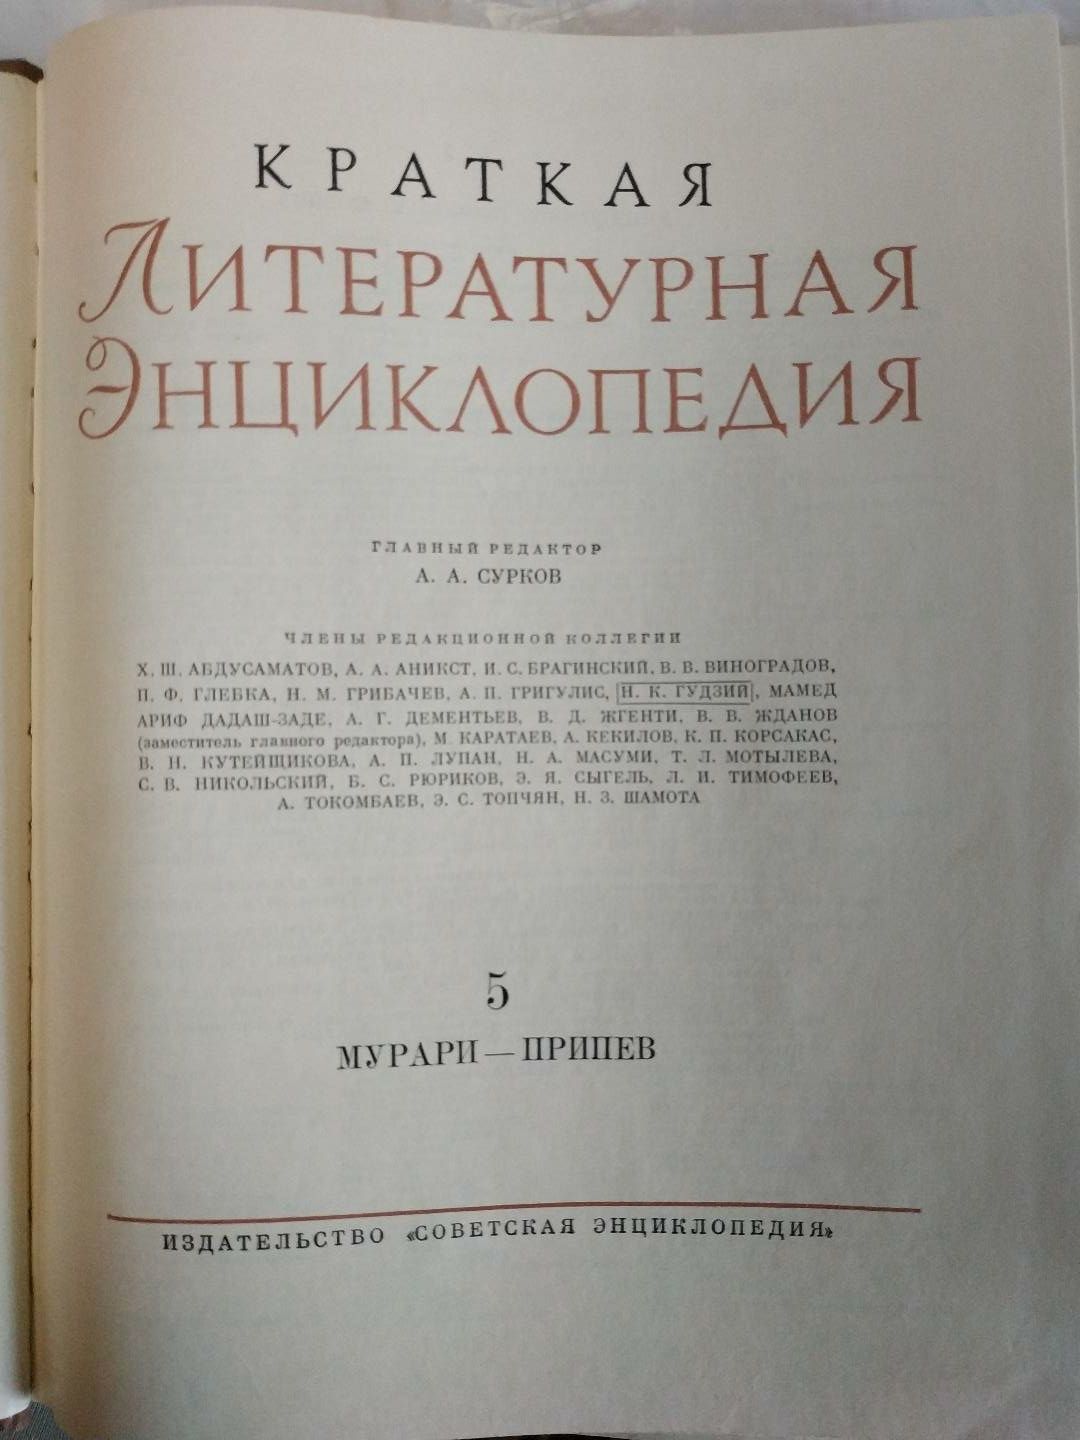 Краткая литературная энциклопедия,1980 г